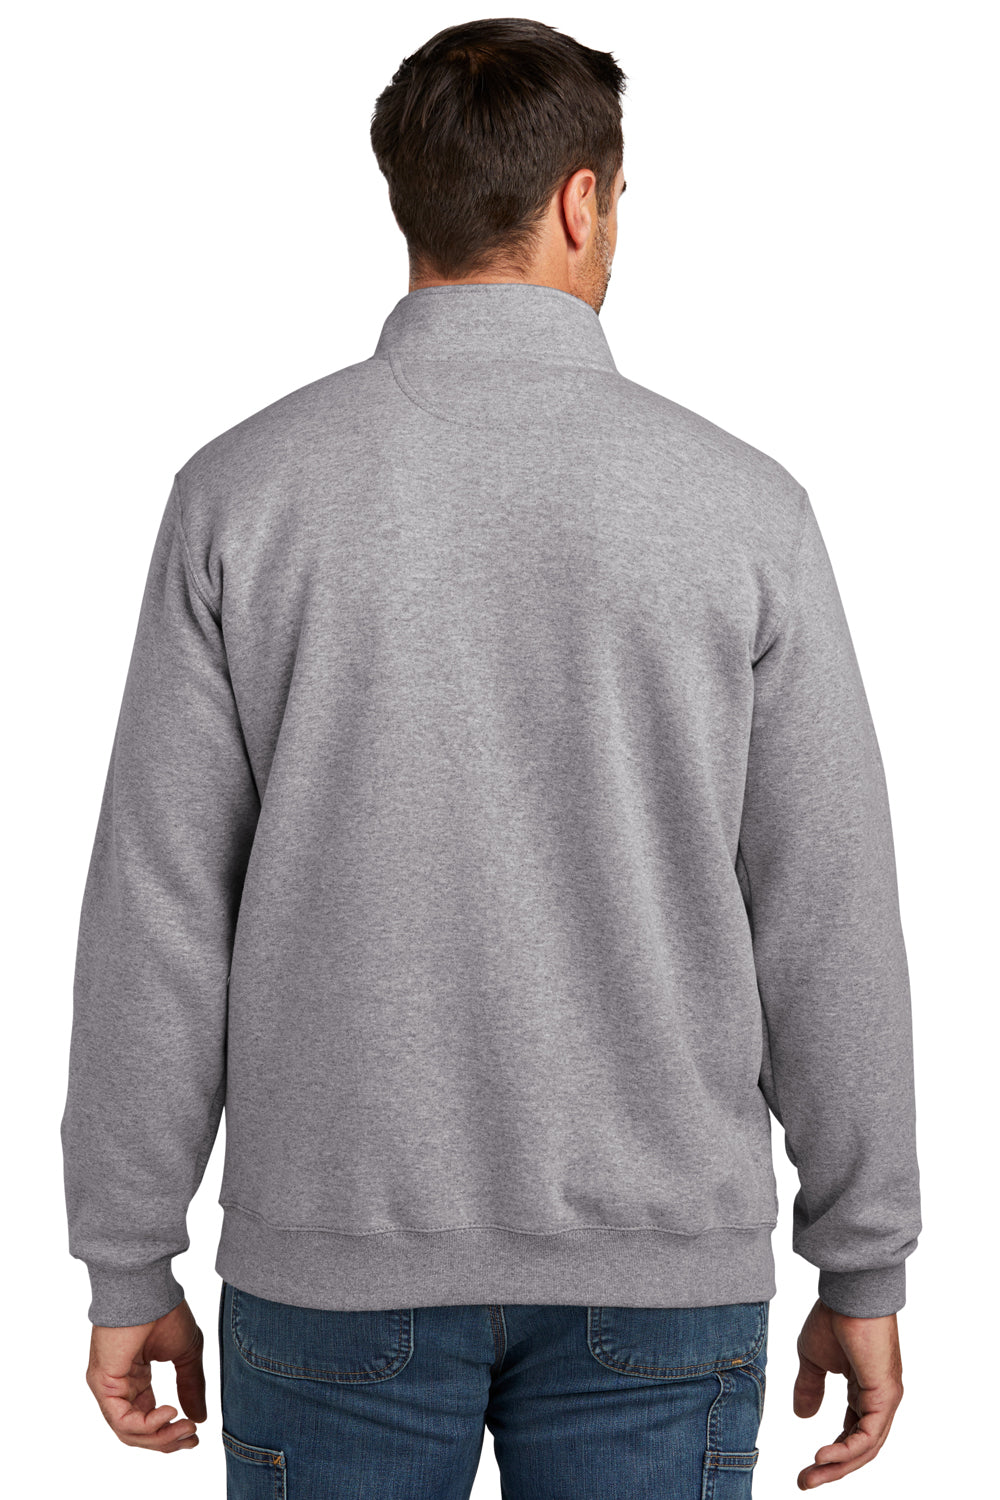 Carhartt CT105294 Mens 1/4 Zip Sweatshirt Heather Grey Model Back